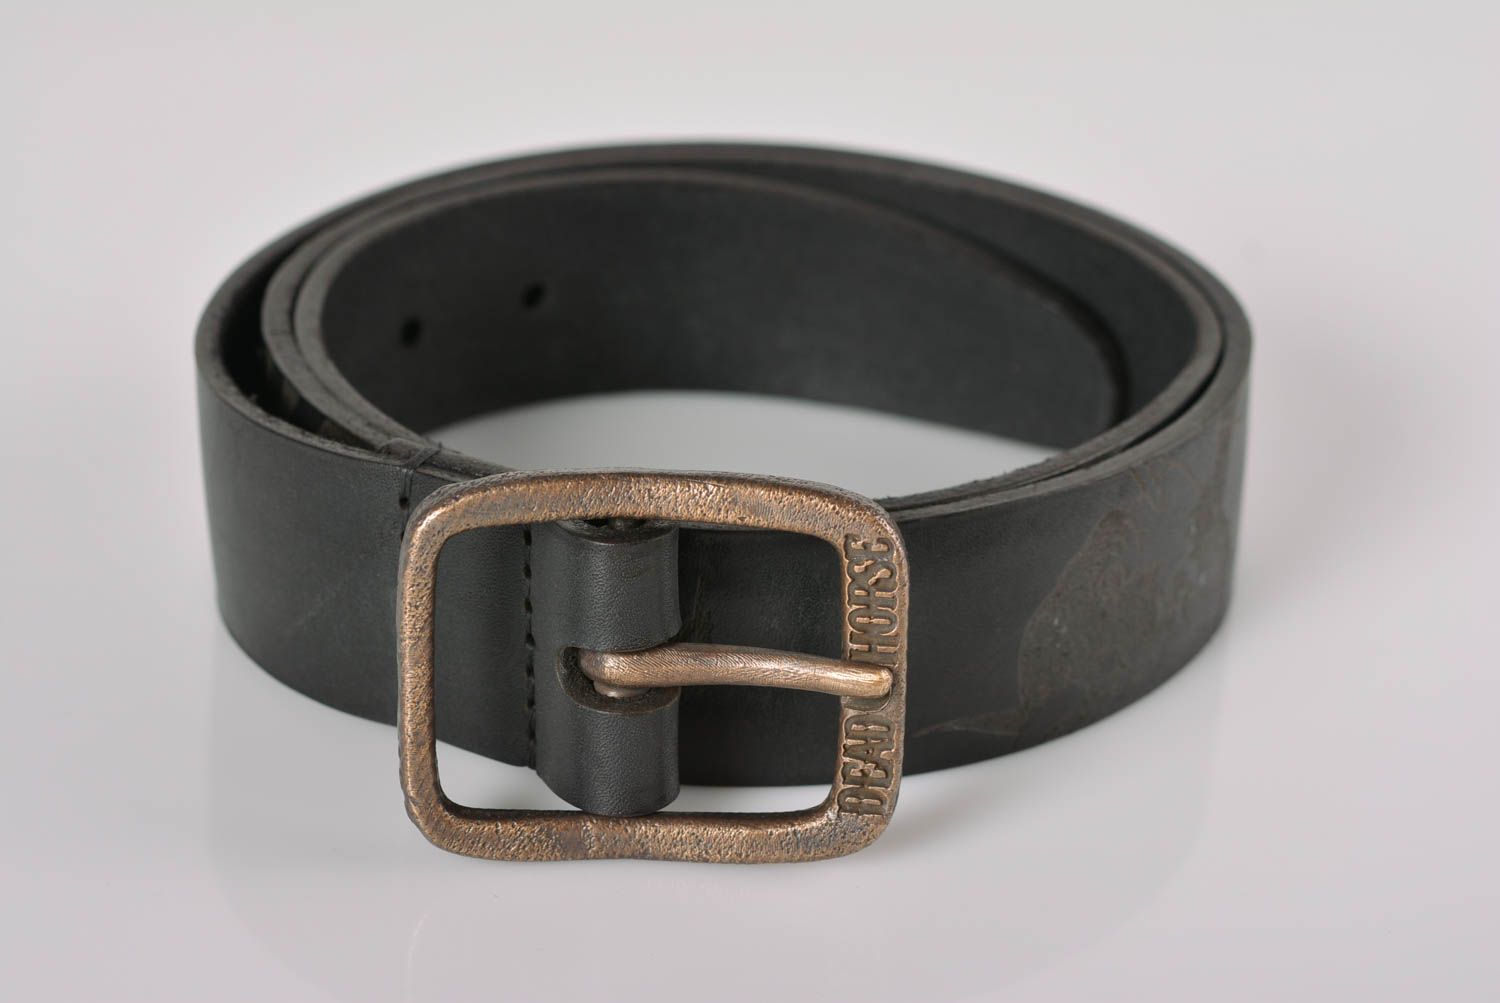 Cinturón de cuero artesanal estiloso ropa masculina accesorio de moda inusual foto 1